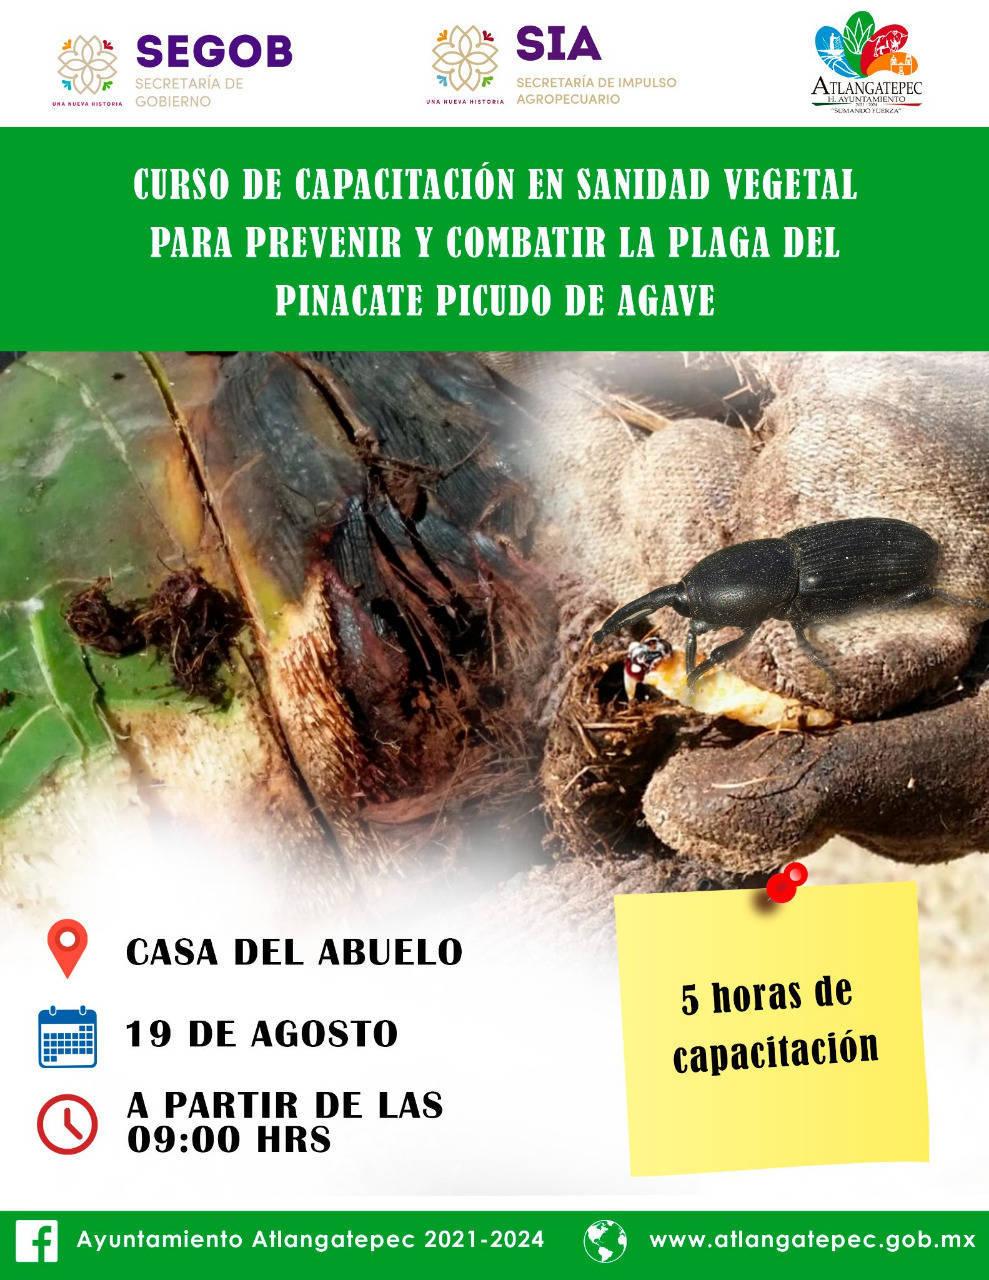 Abren curso en Atlangatepec para prevenir la plaga del pinacate picudo